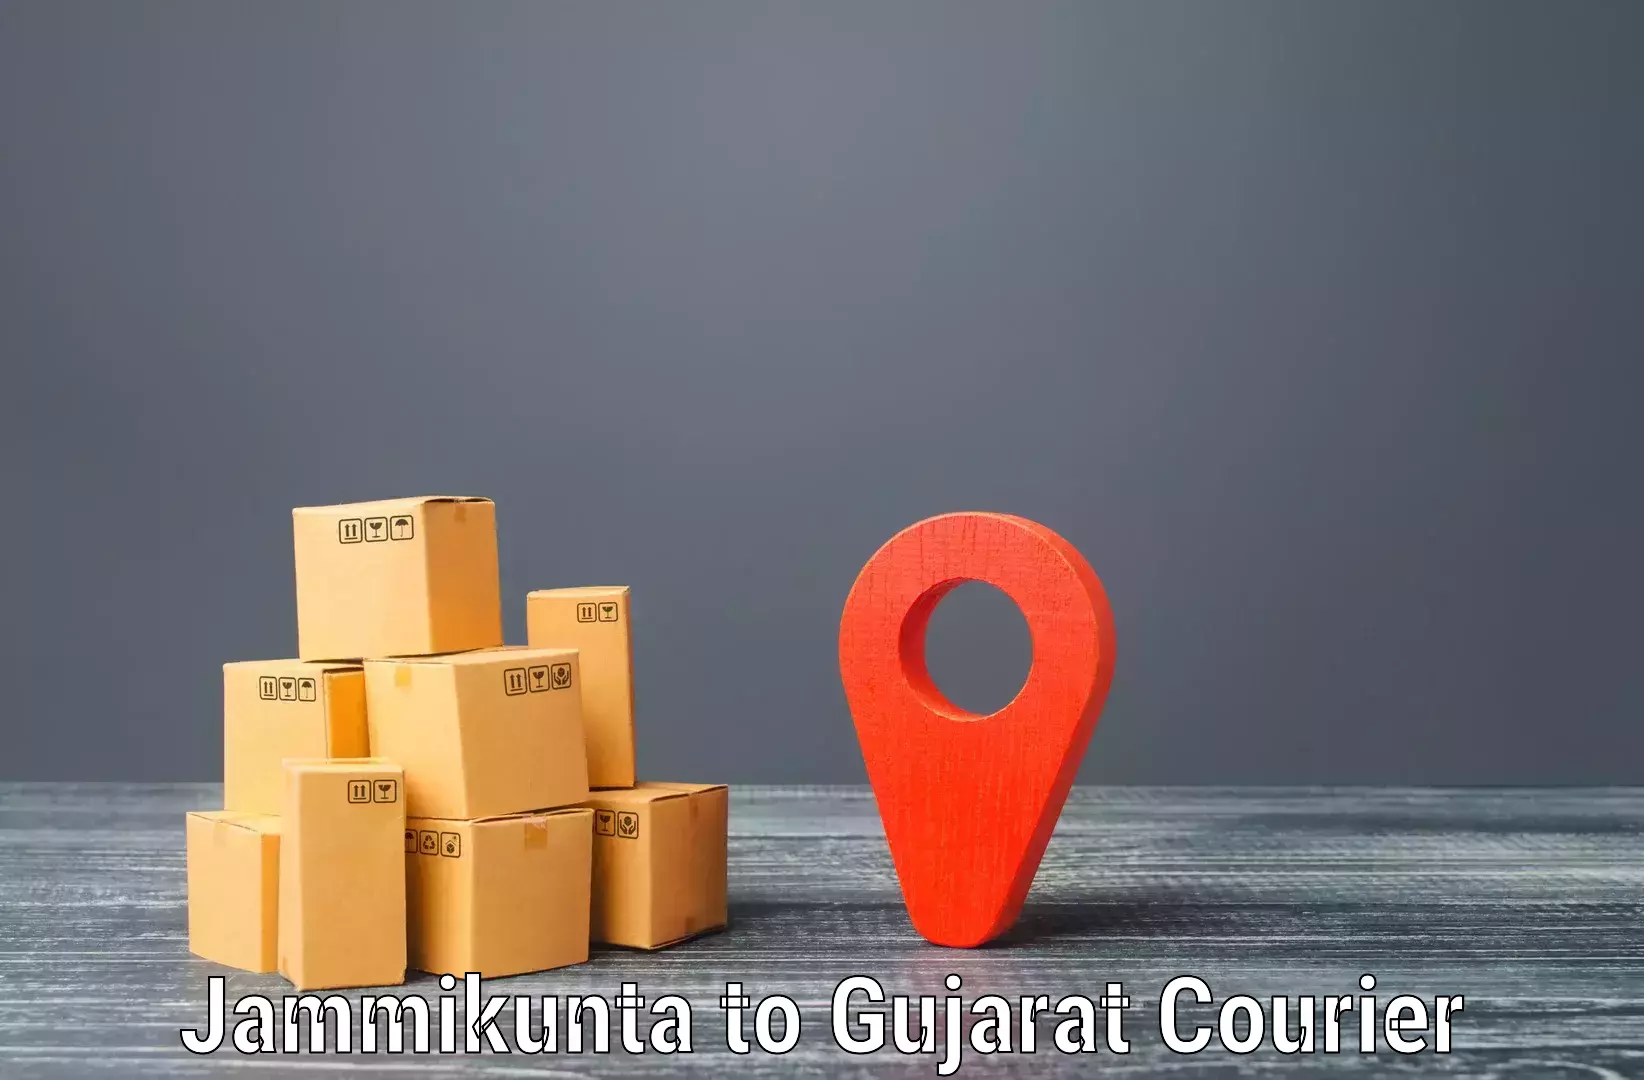 Next-generation courier services Jammikunta to Radhanpur